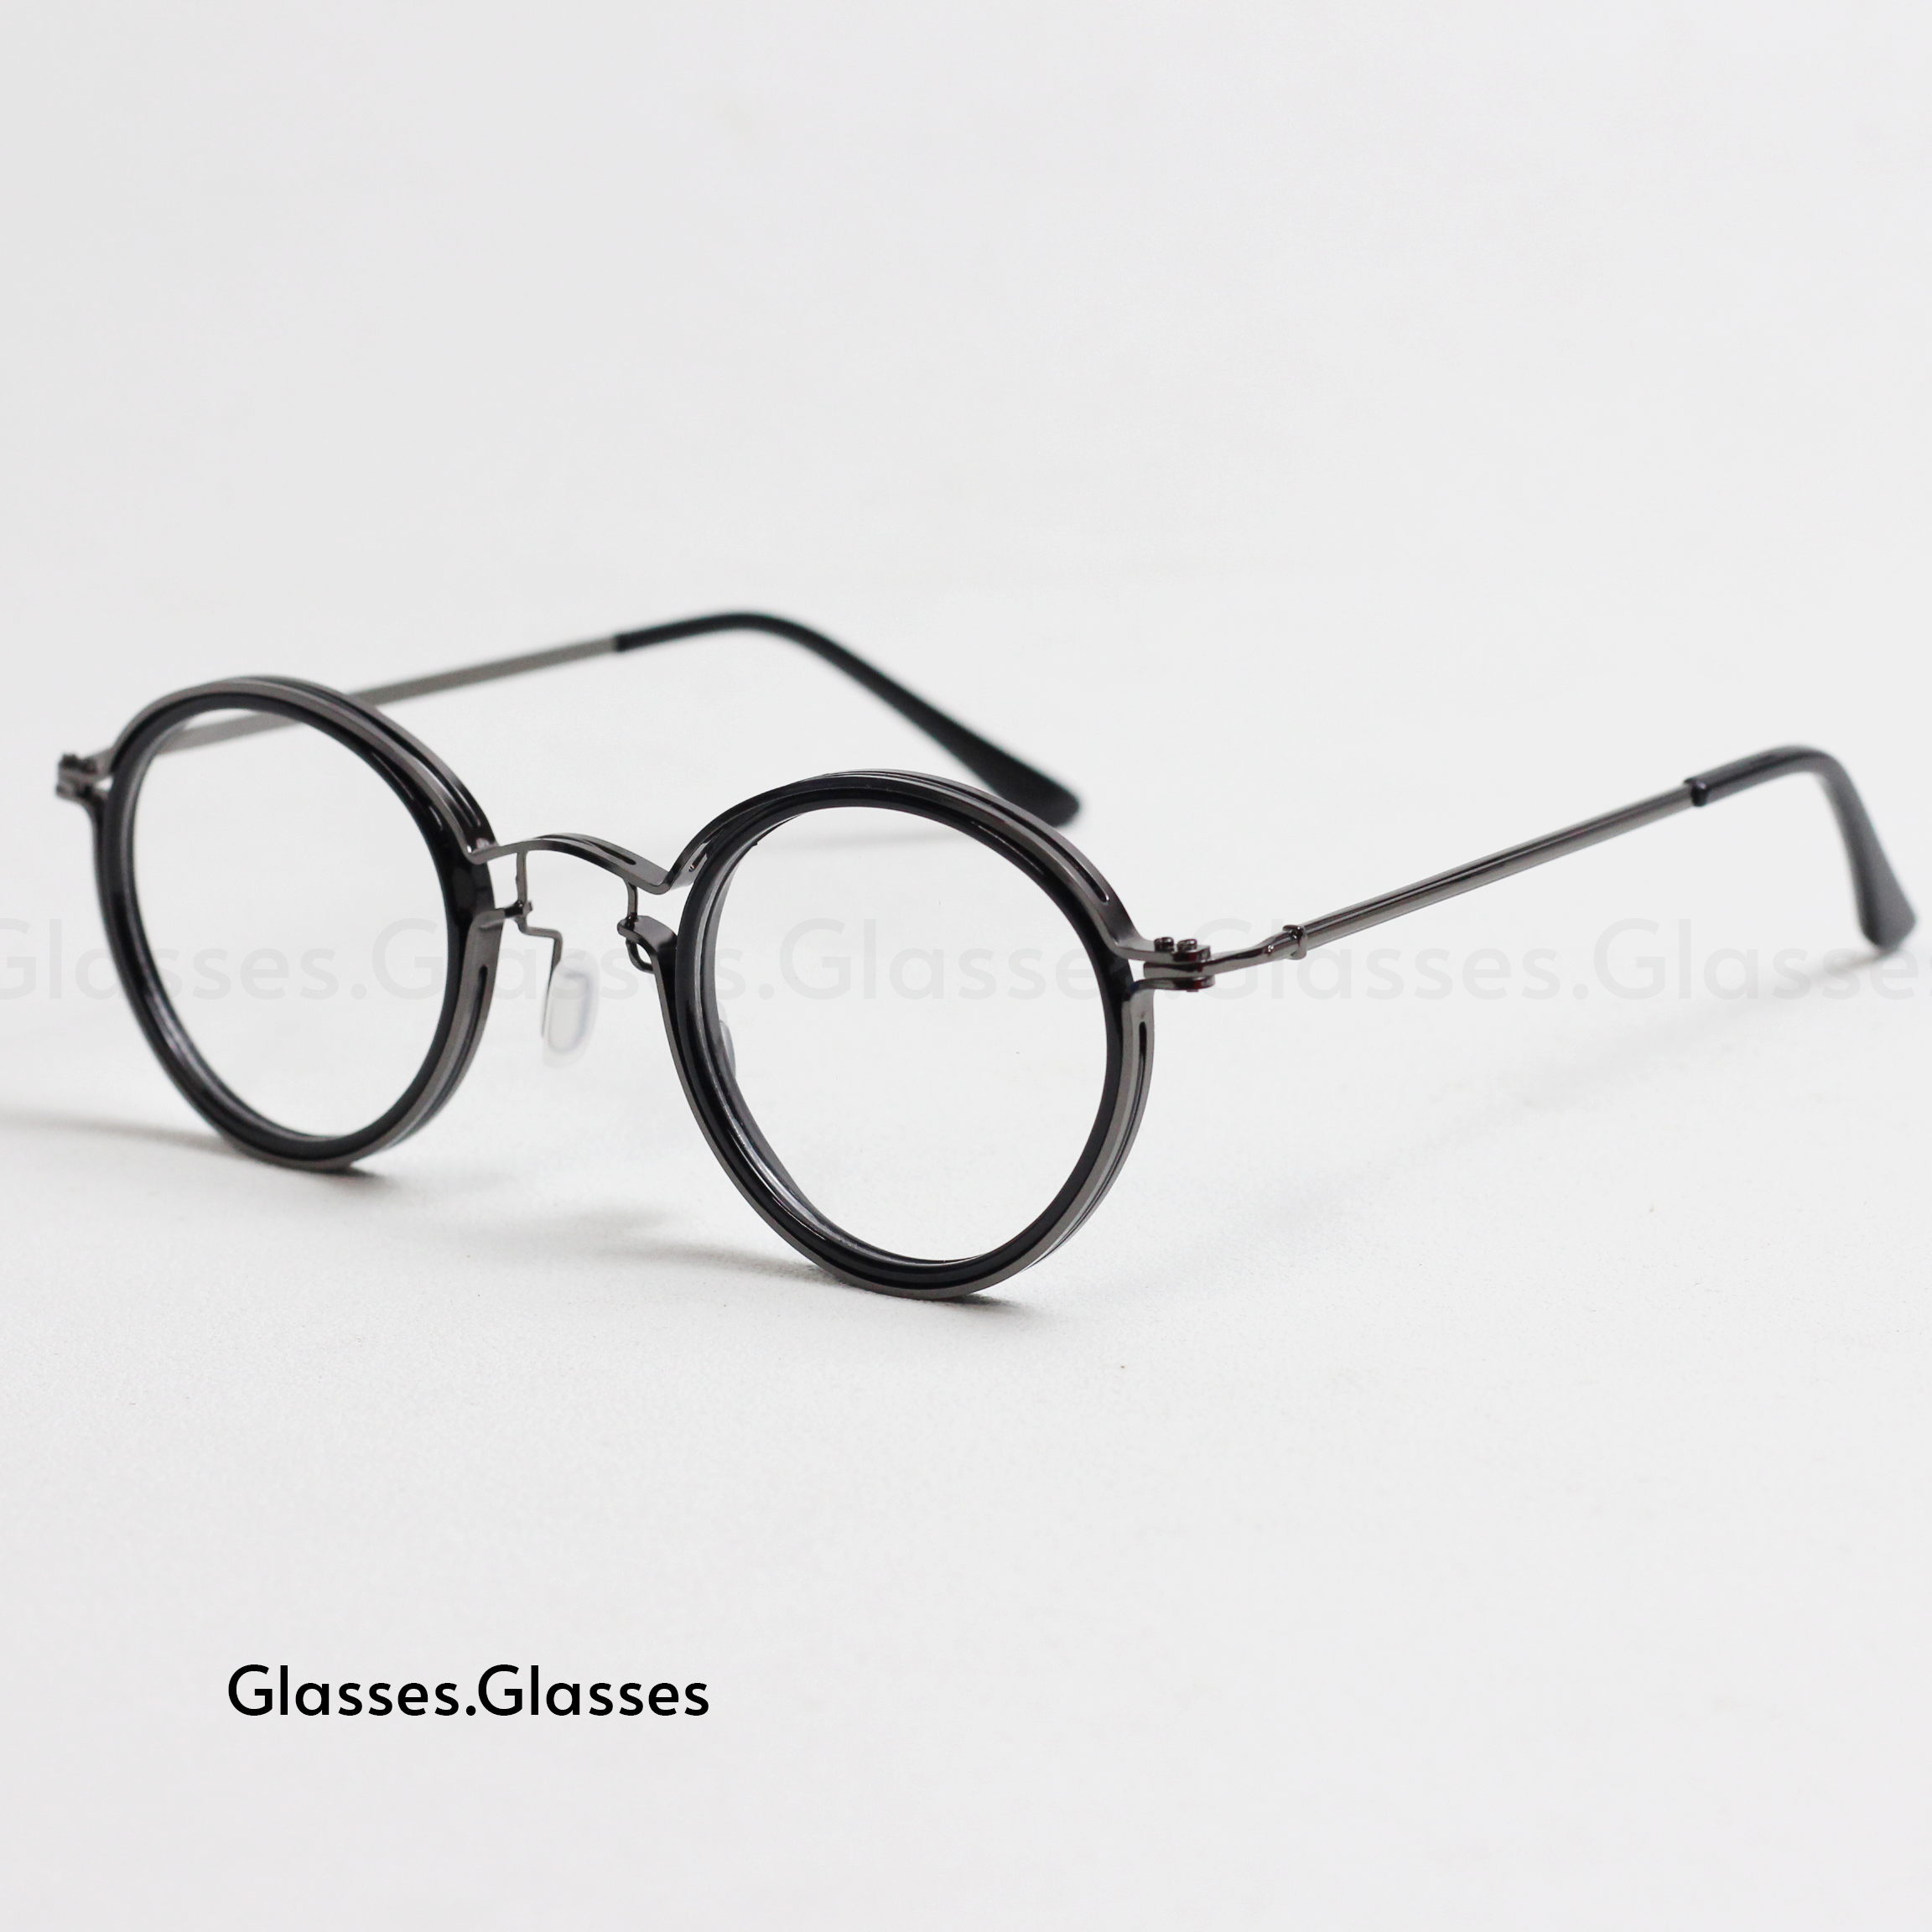 Martin - Alloy Frame Round Glasses